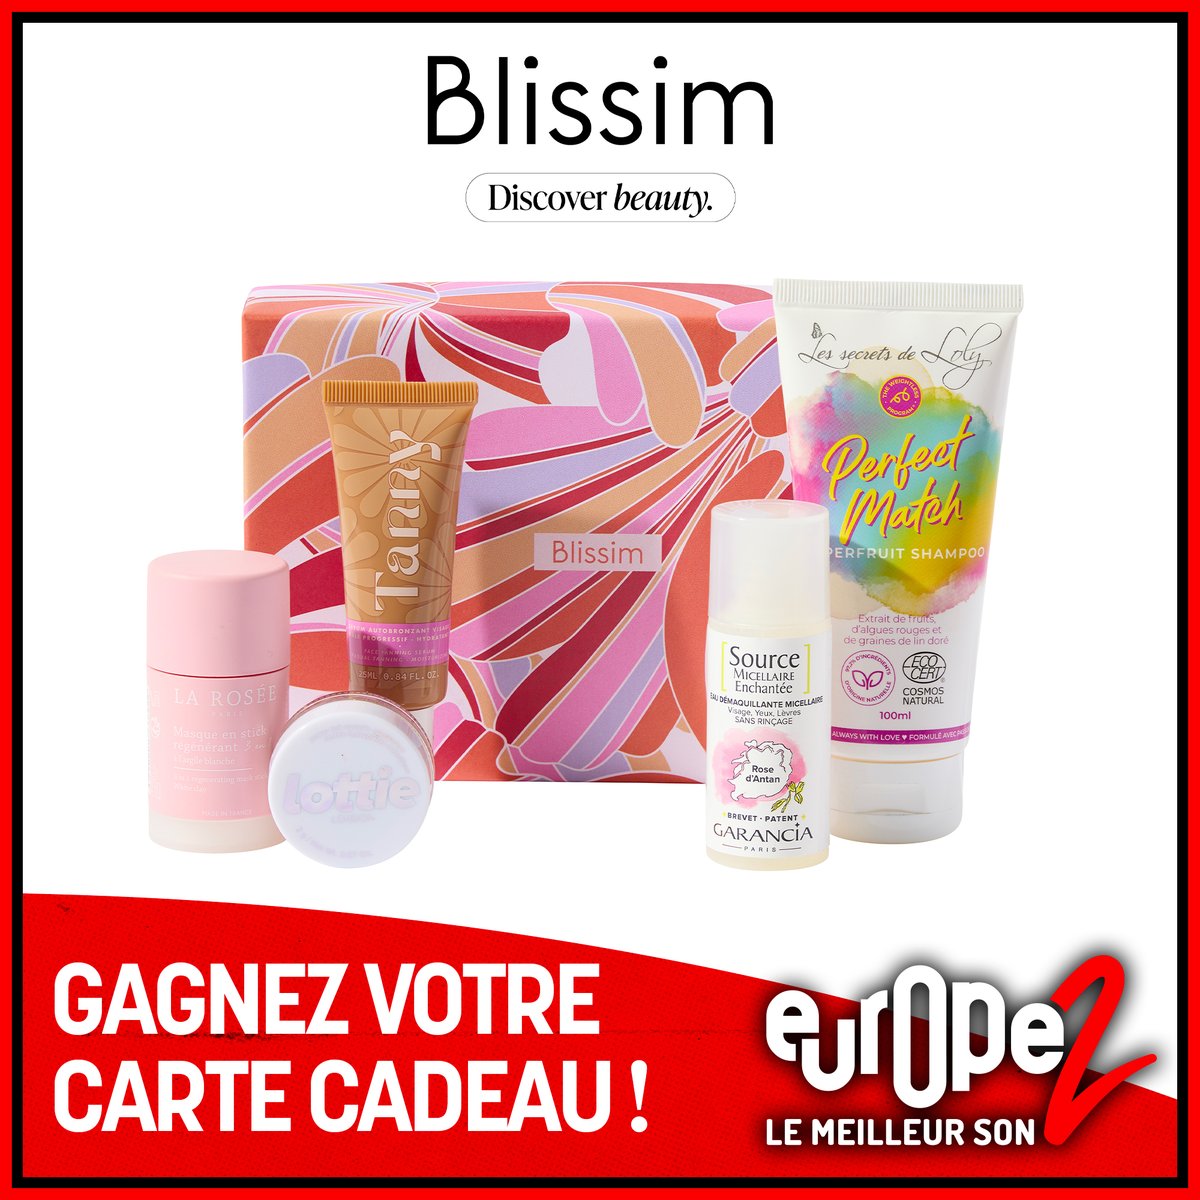 Pour vous refaire une beauté, Europe 2 vous offre votre carte cadeau Blissim pour une box personnalisée avec 5 produits au choix 💆‍♀️ Pour GAGNER : ➡ RT le post ➡ FOLLOW le compte Europe 2